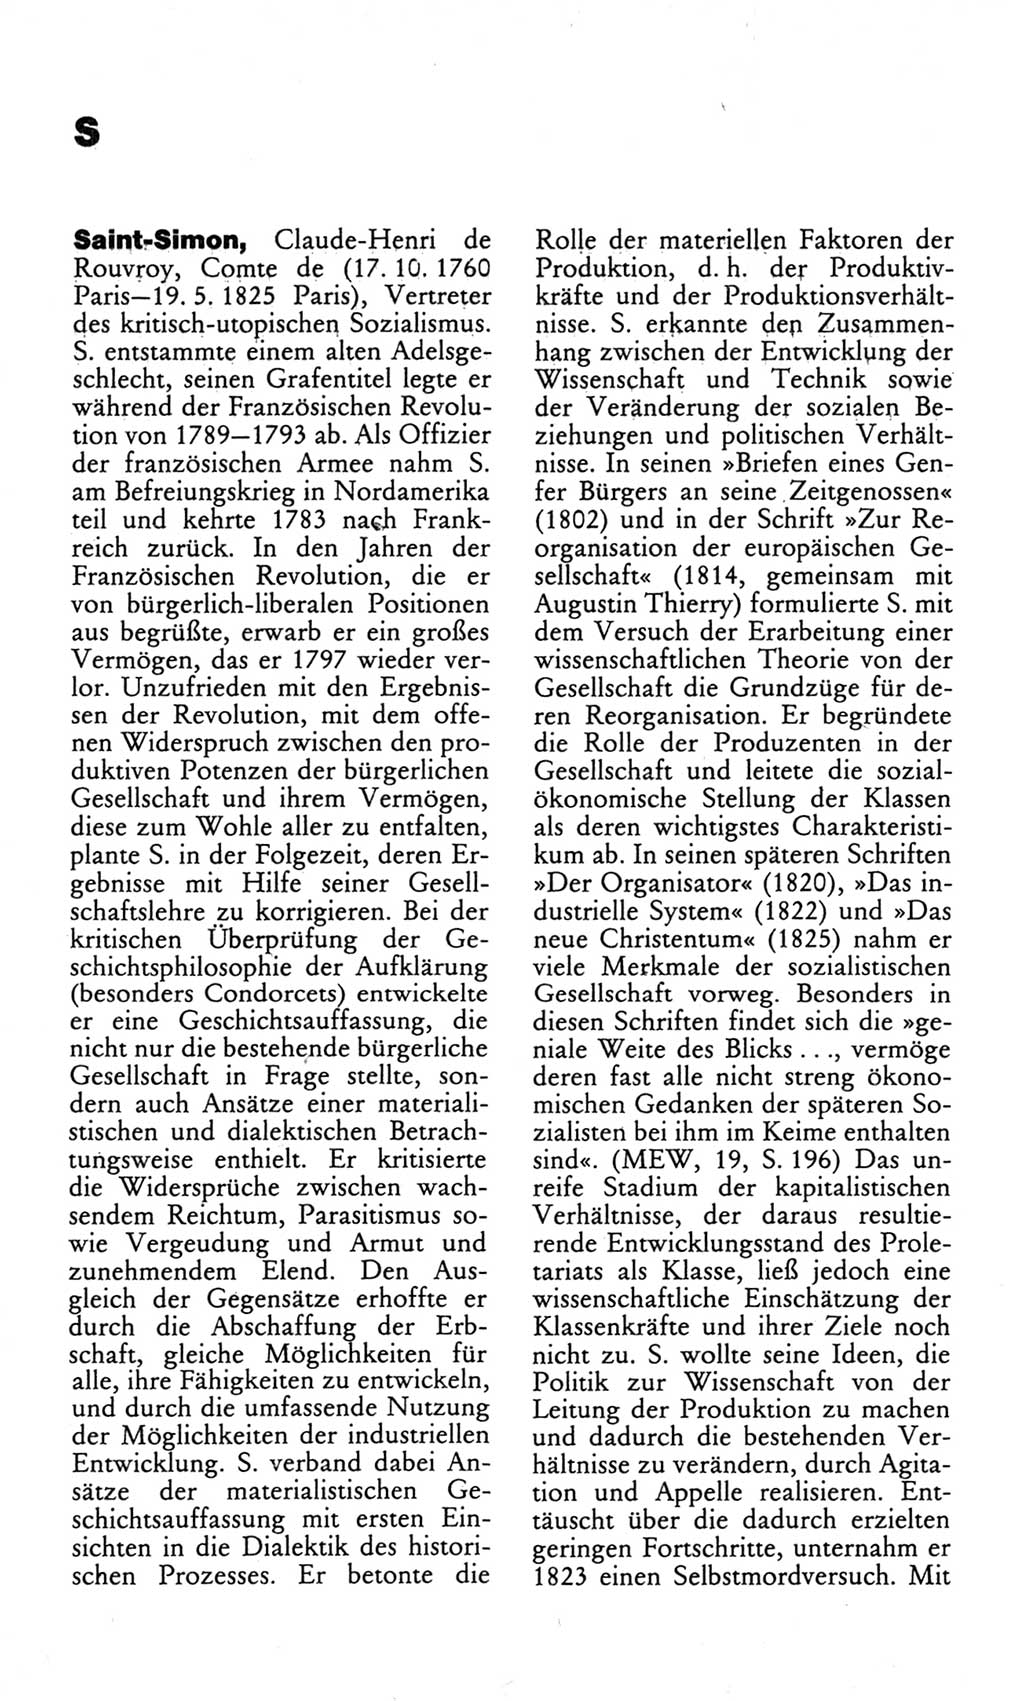 Wörterbuch des wissenschaftlichen Kommunismus [Deutsche Demokratische Republik (DDR)] 1982, Seite 326 (Wb. wiss. Komm. DDR 1982, S. 326)